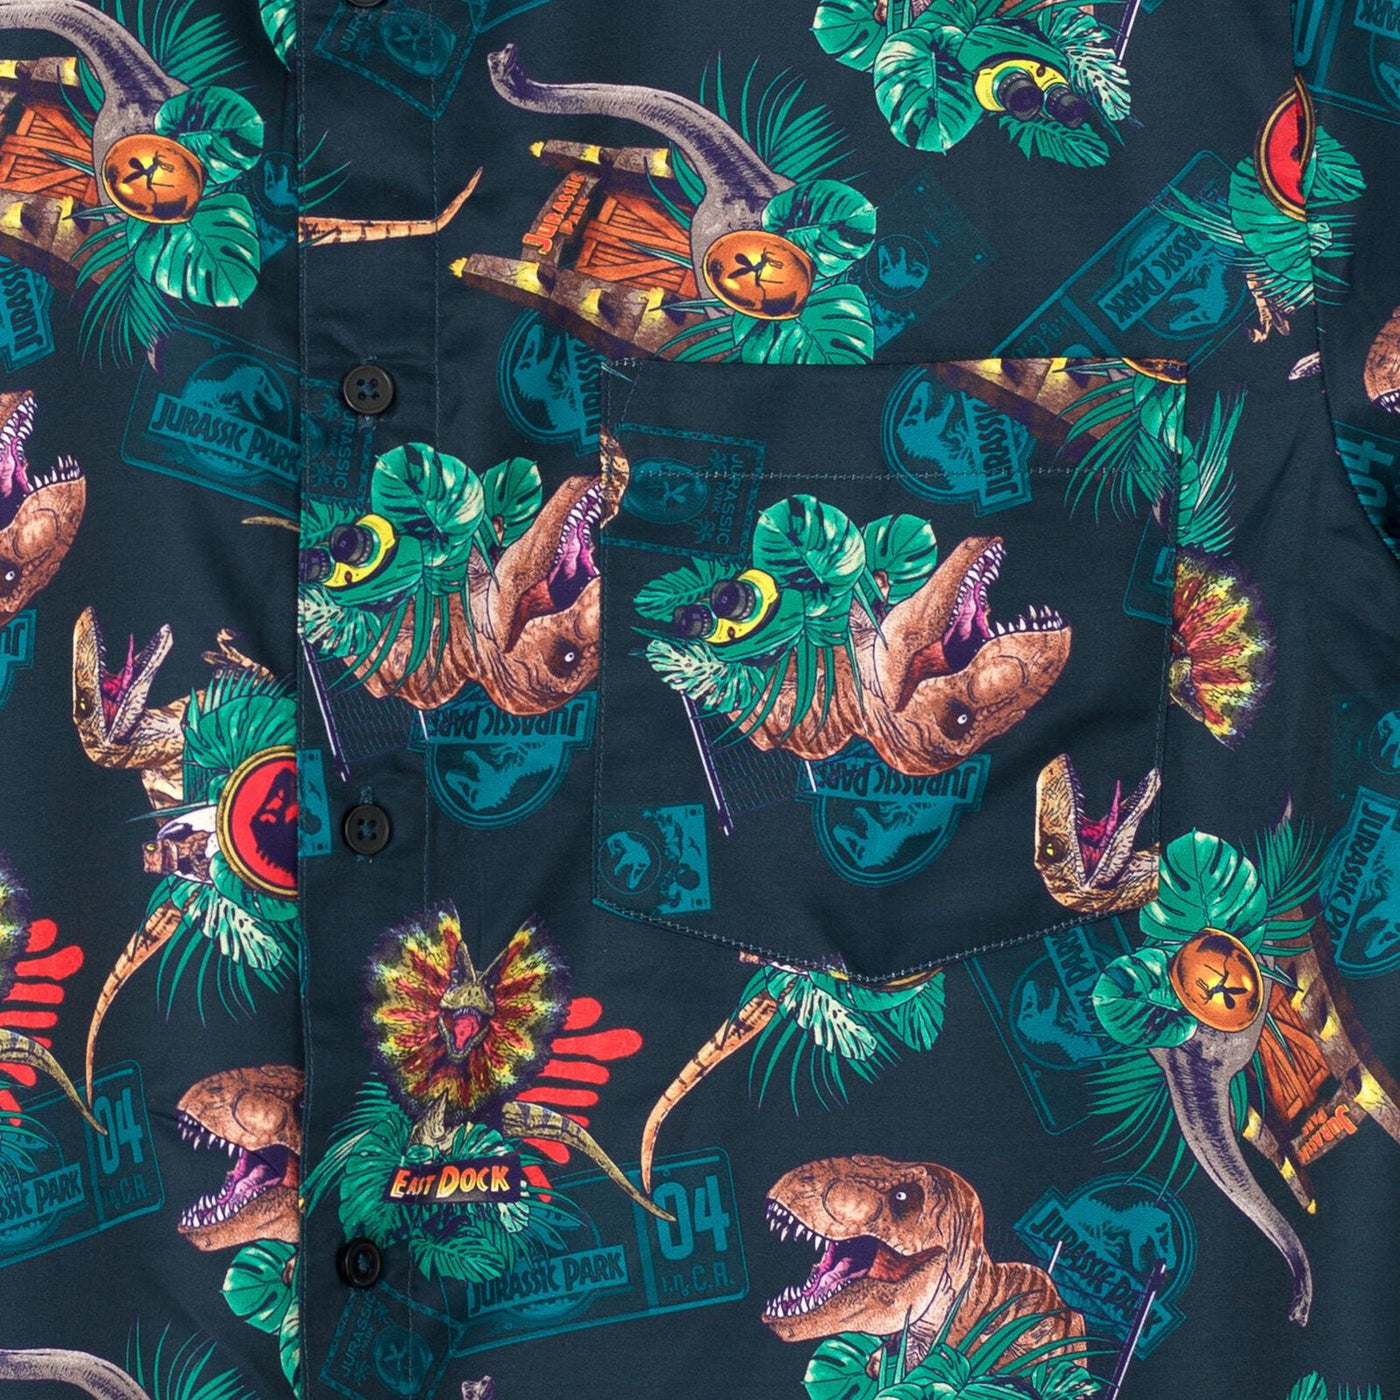 Jurassic World Park T-Rex Hawaiian Button Down Dress Shirt - imagikids